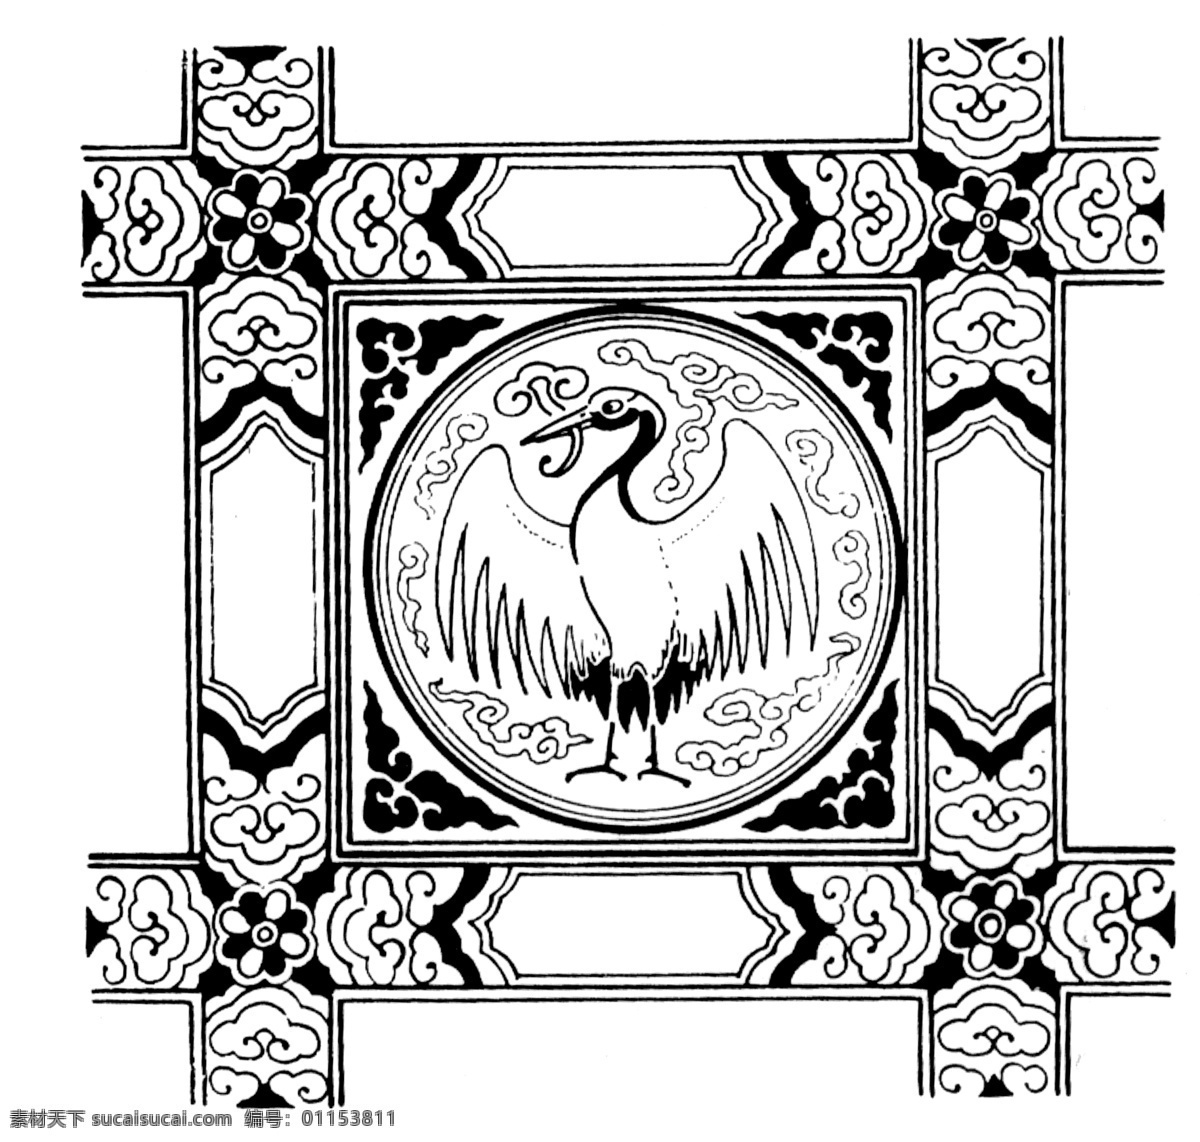 鸟兽纹样 传统 图案 传统图案 设计素材 动物图案 装饰图案 书画美术 白色